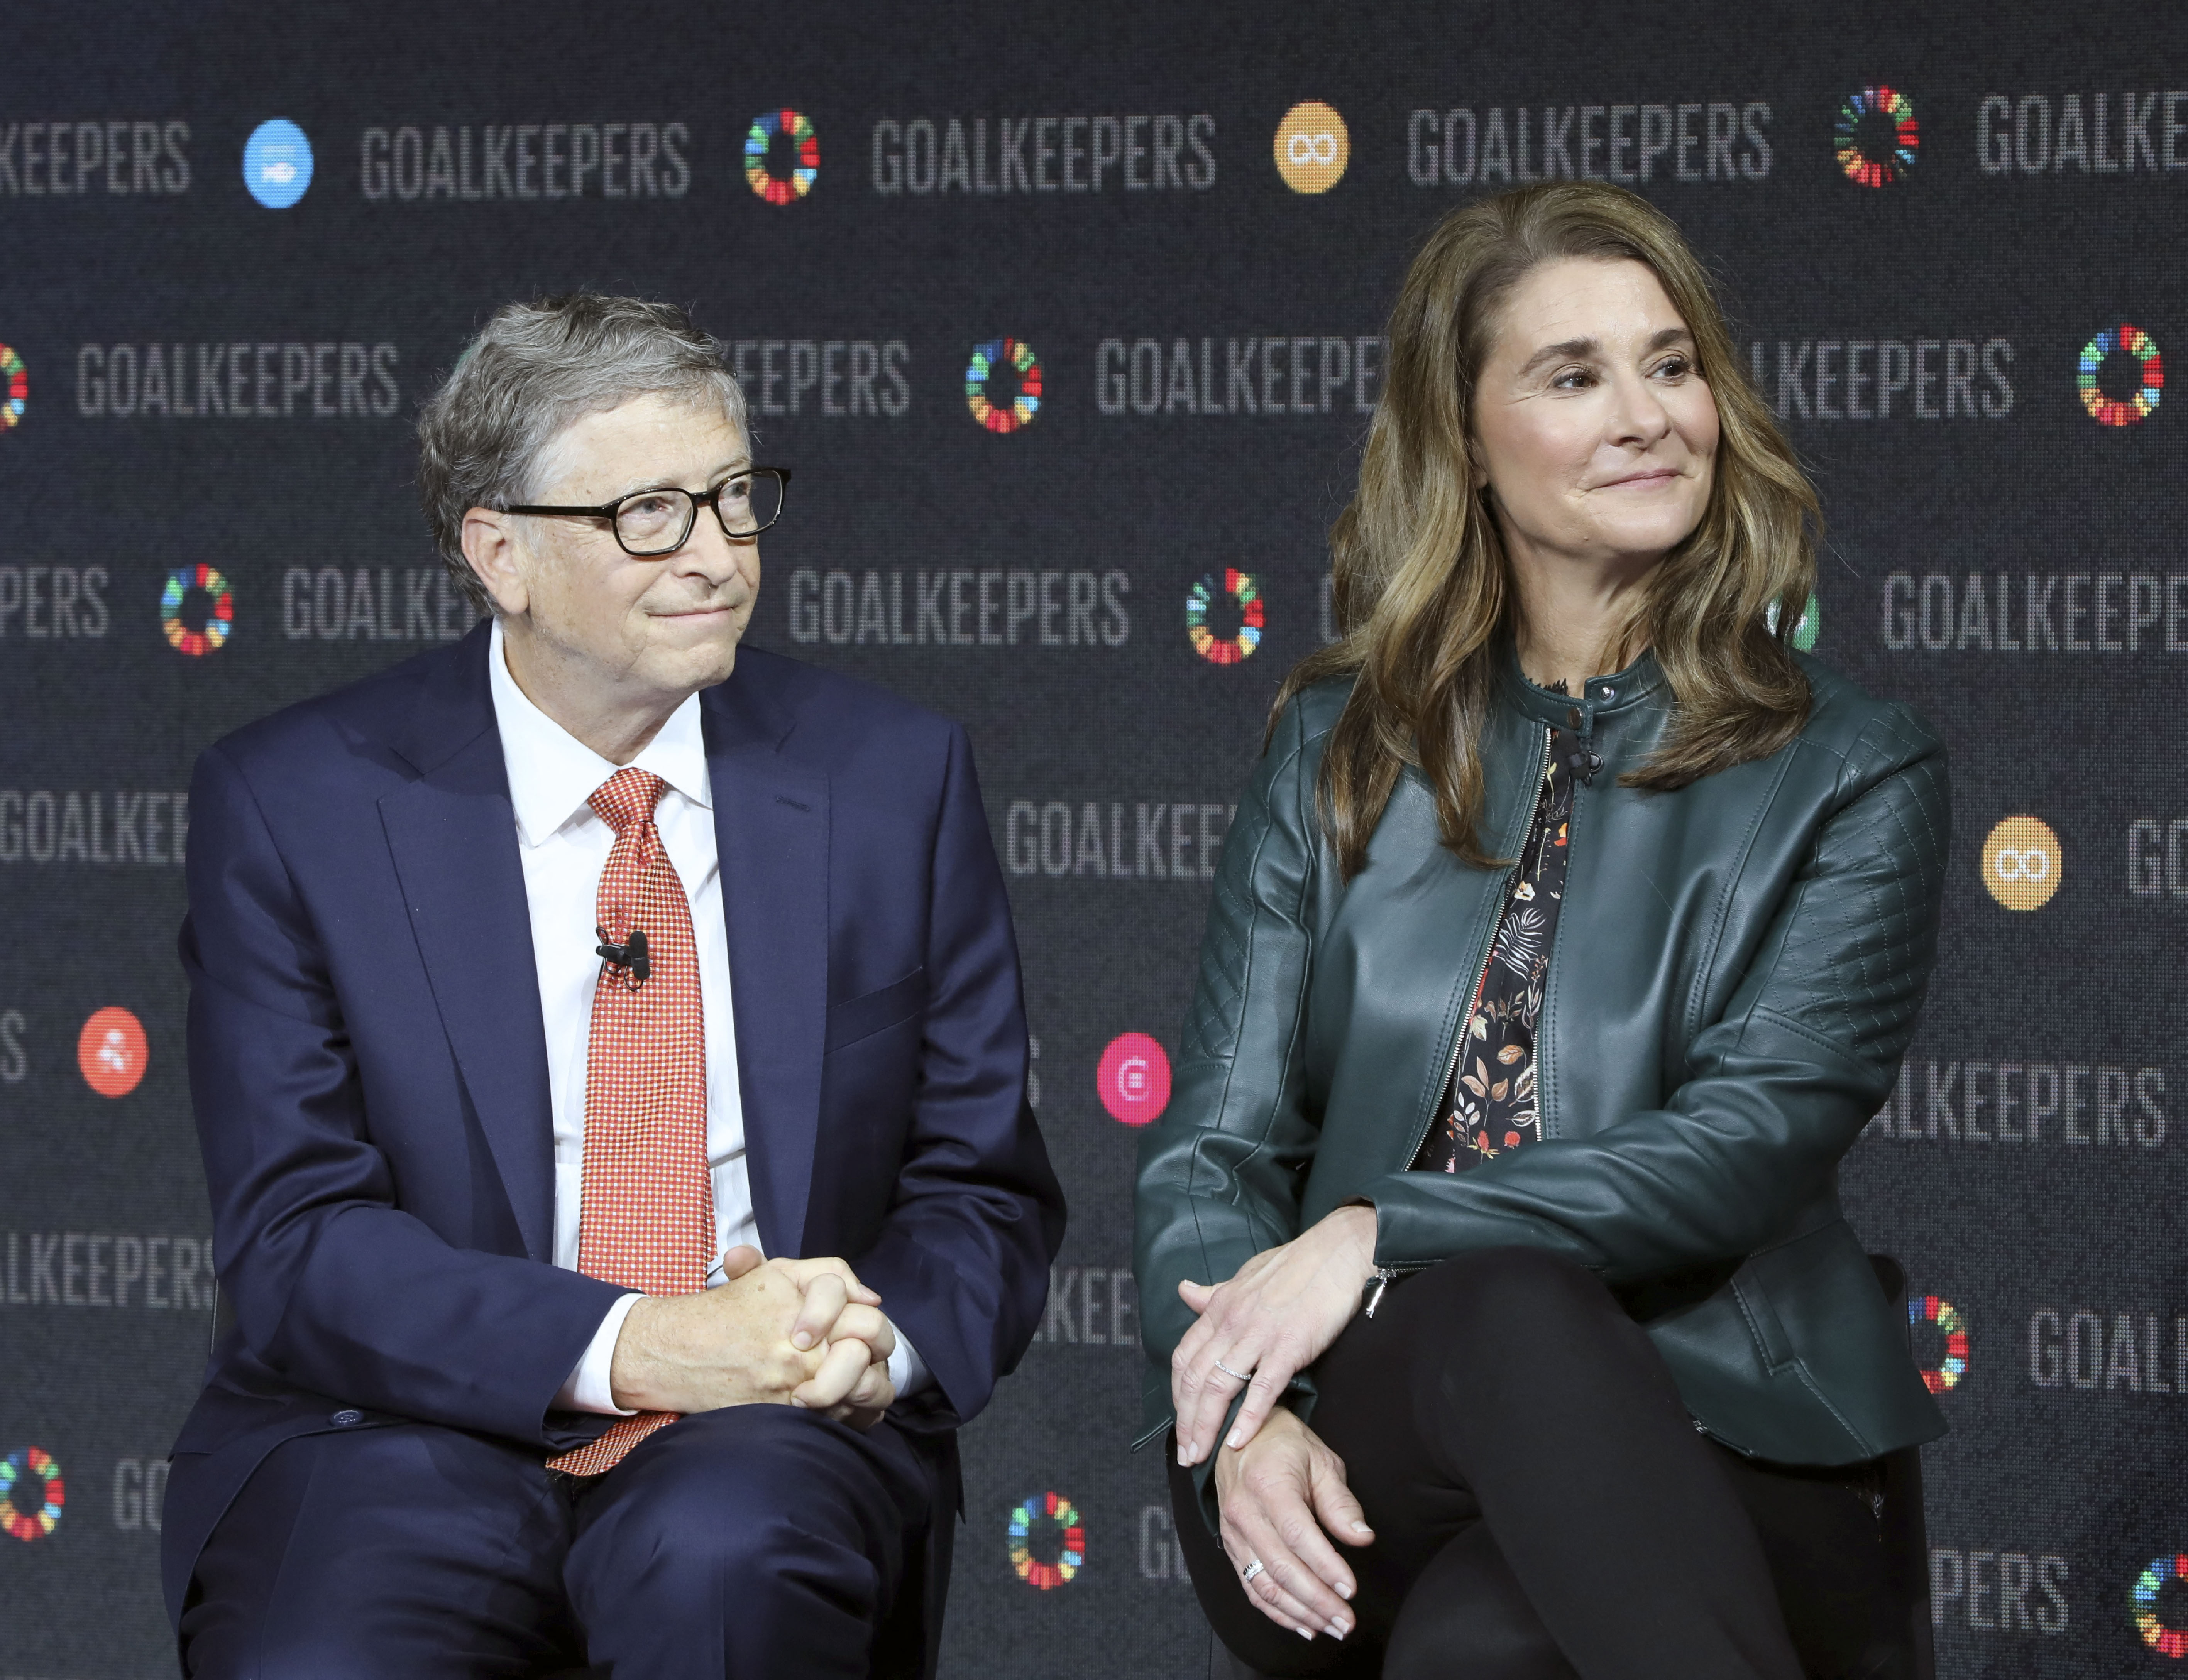 Melinda Gates 1,8 milliárdos részvénypakettet kapott a férjétől